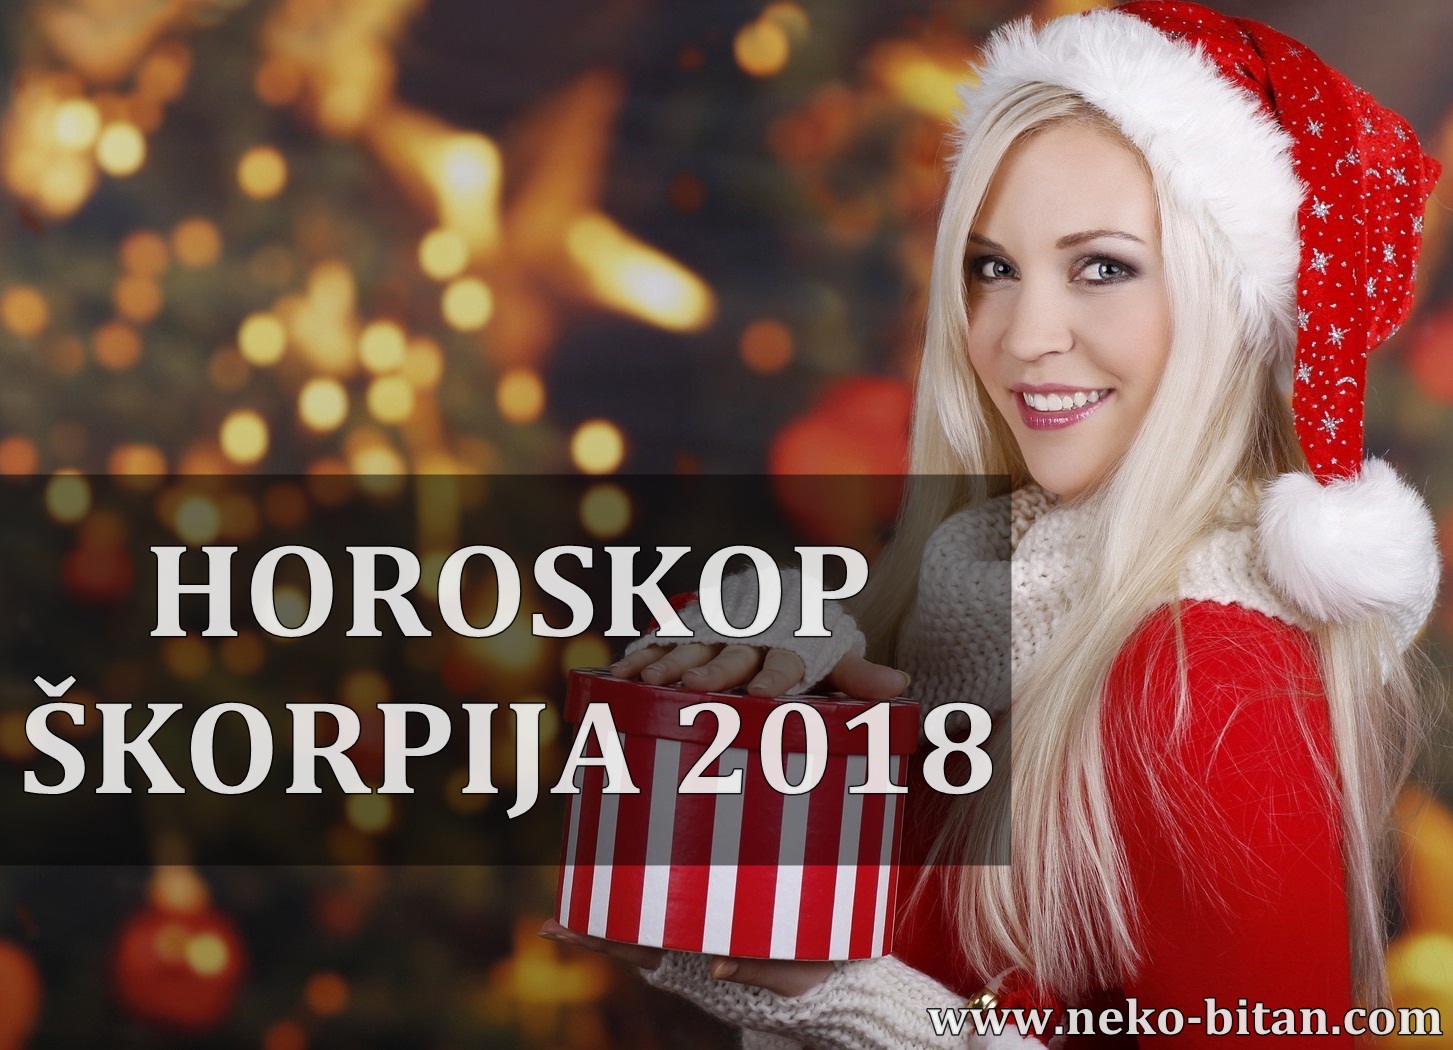 Ljubavni horoskop škorpion 2018